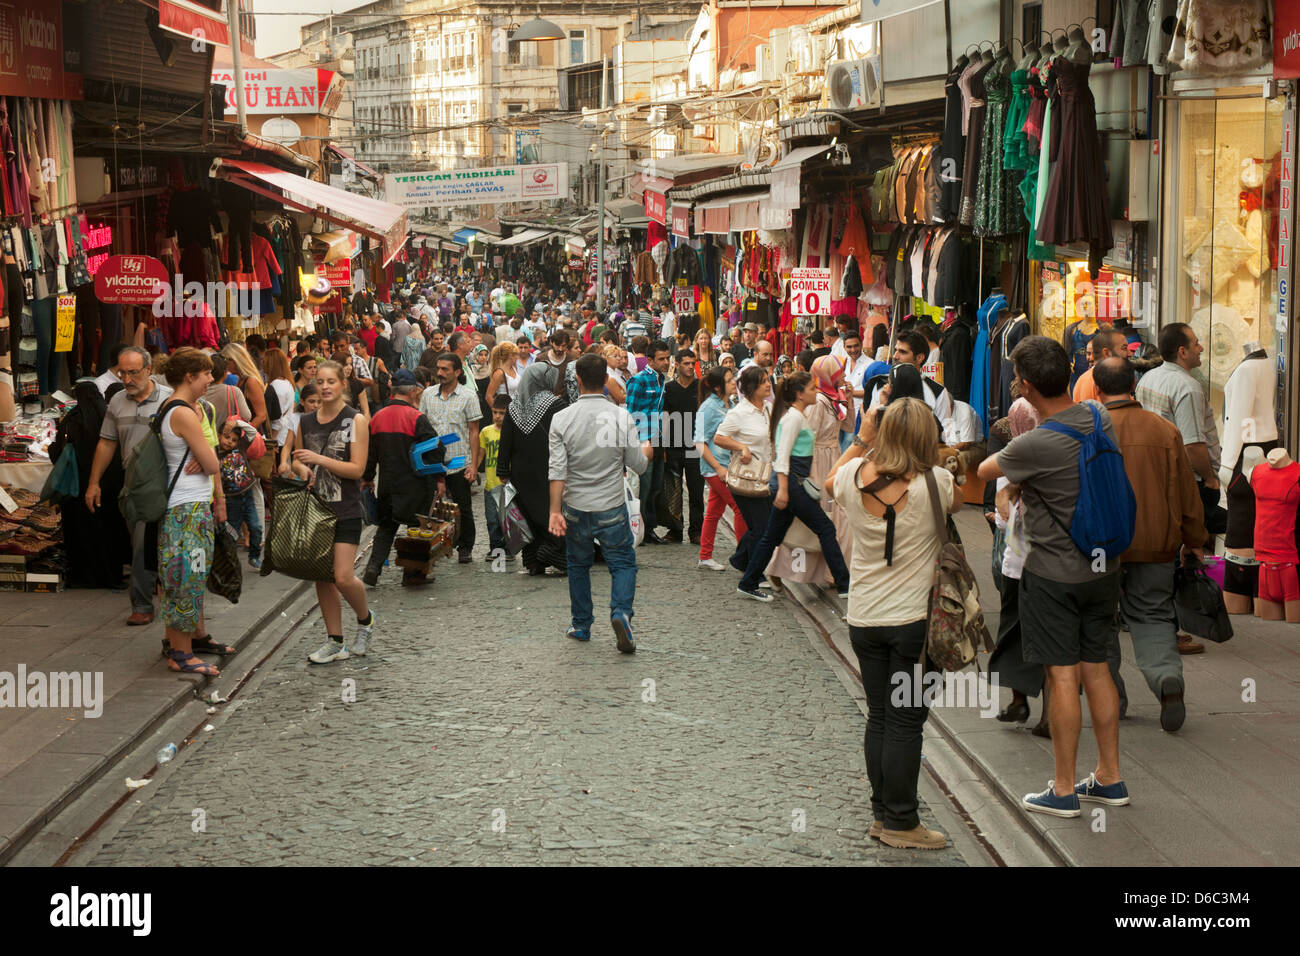 Türkei, Istanbul, die Einkaufstrasse Mahmut Pasa Yokusu Sokak"führt vom Grossen Bazaar zum Gewürzbabazaar Foto Stock